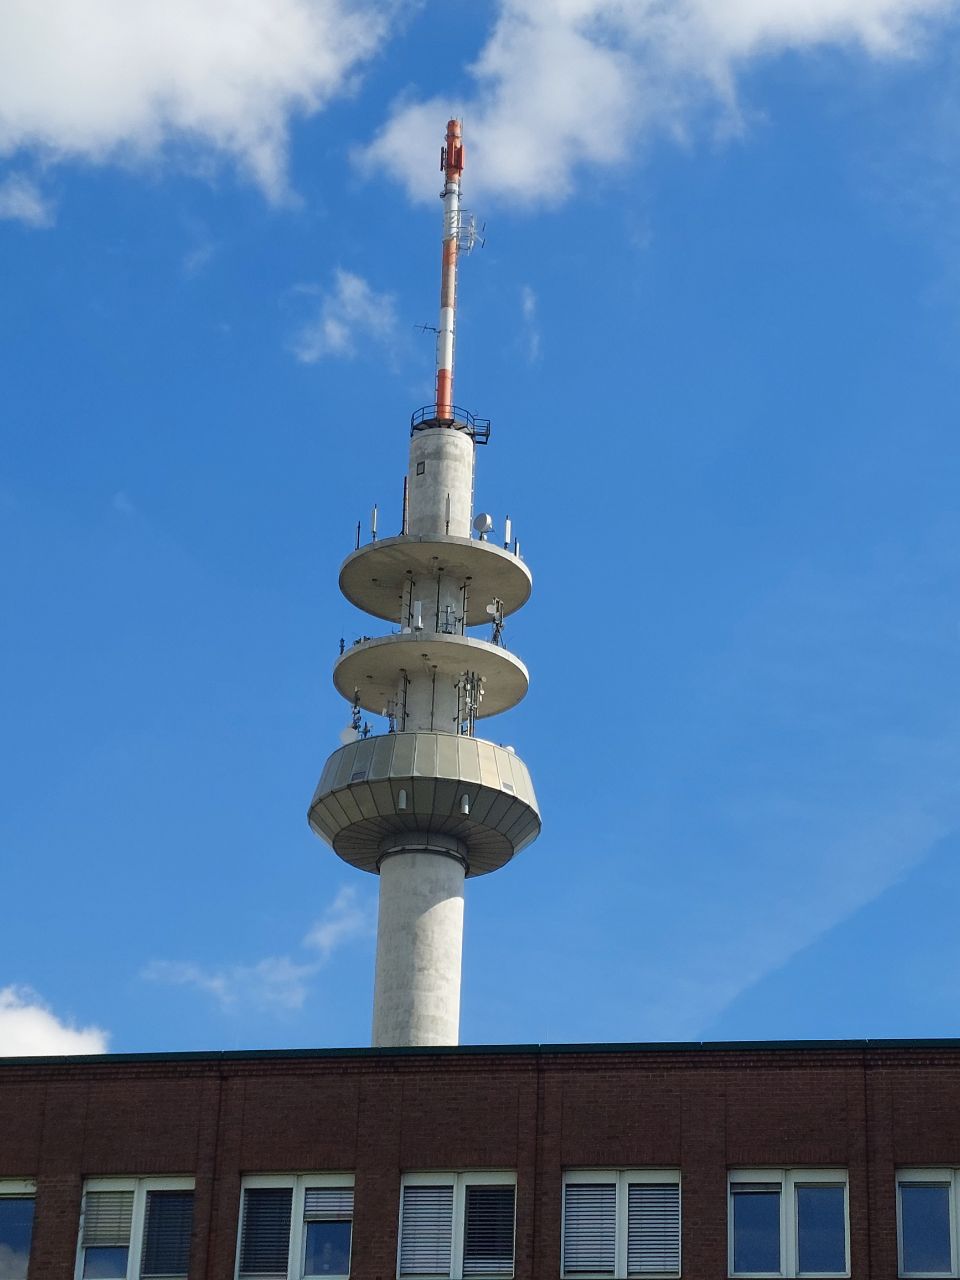 FMT Bochum  - Grumme 89.3 NRW1,  98.5 Radio Bochum